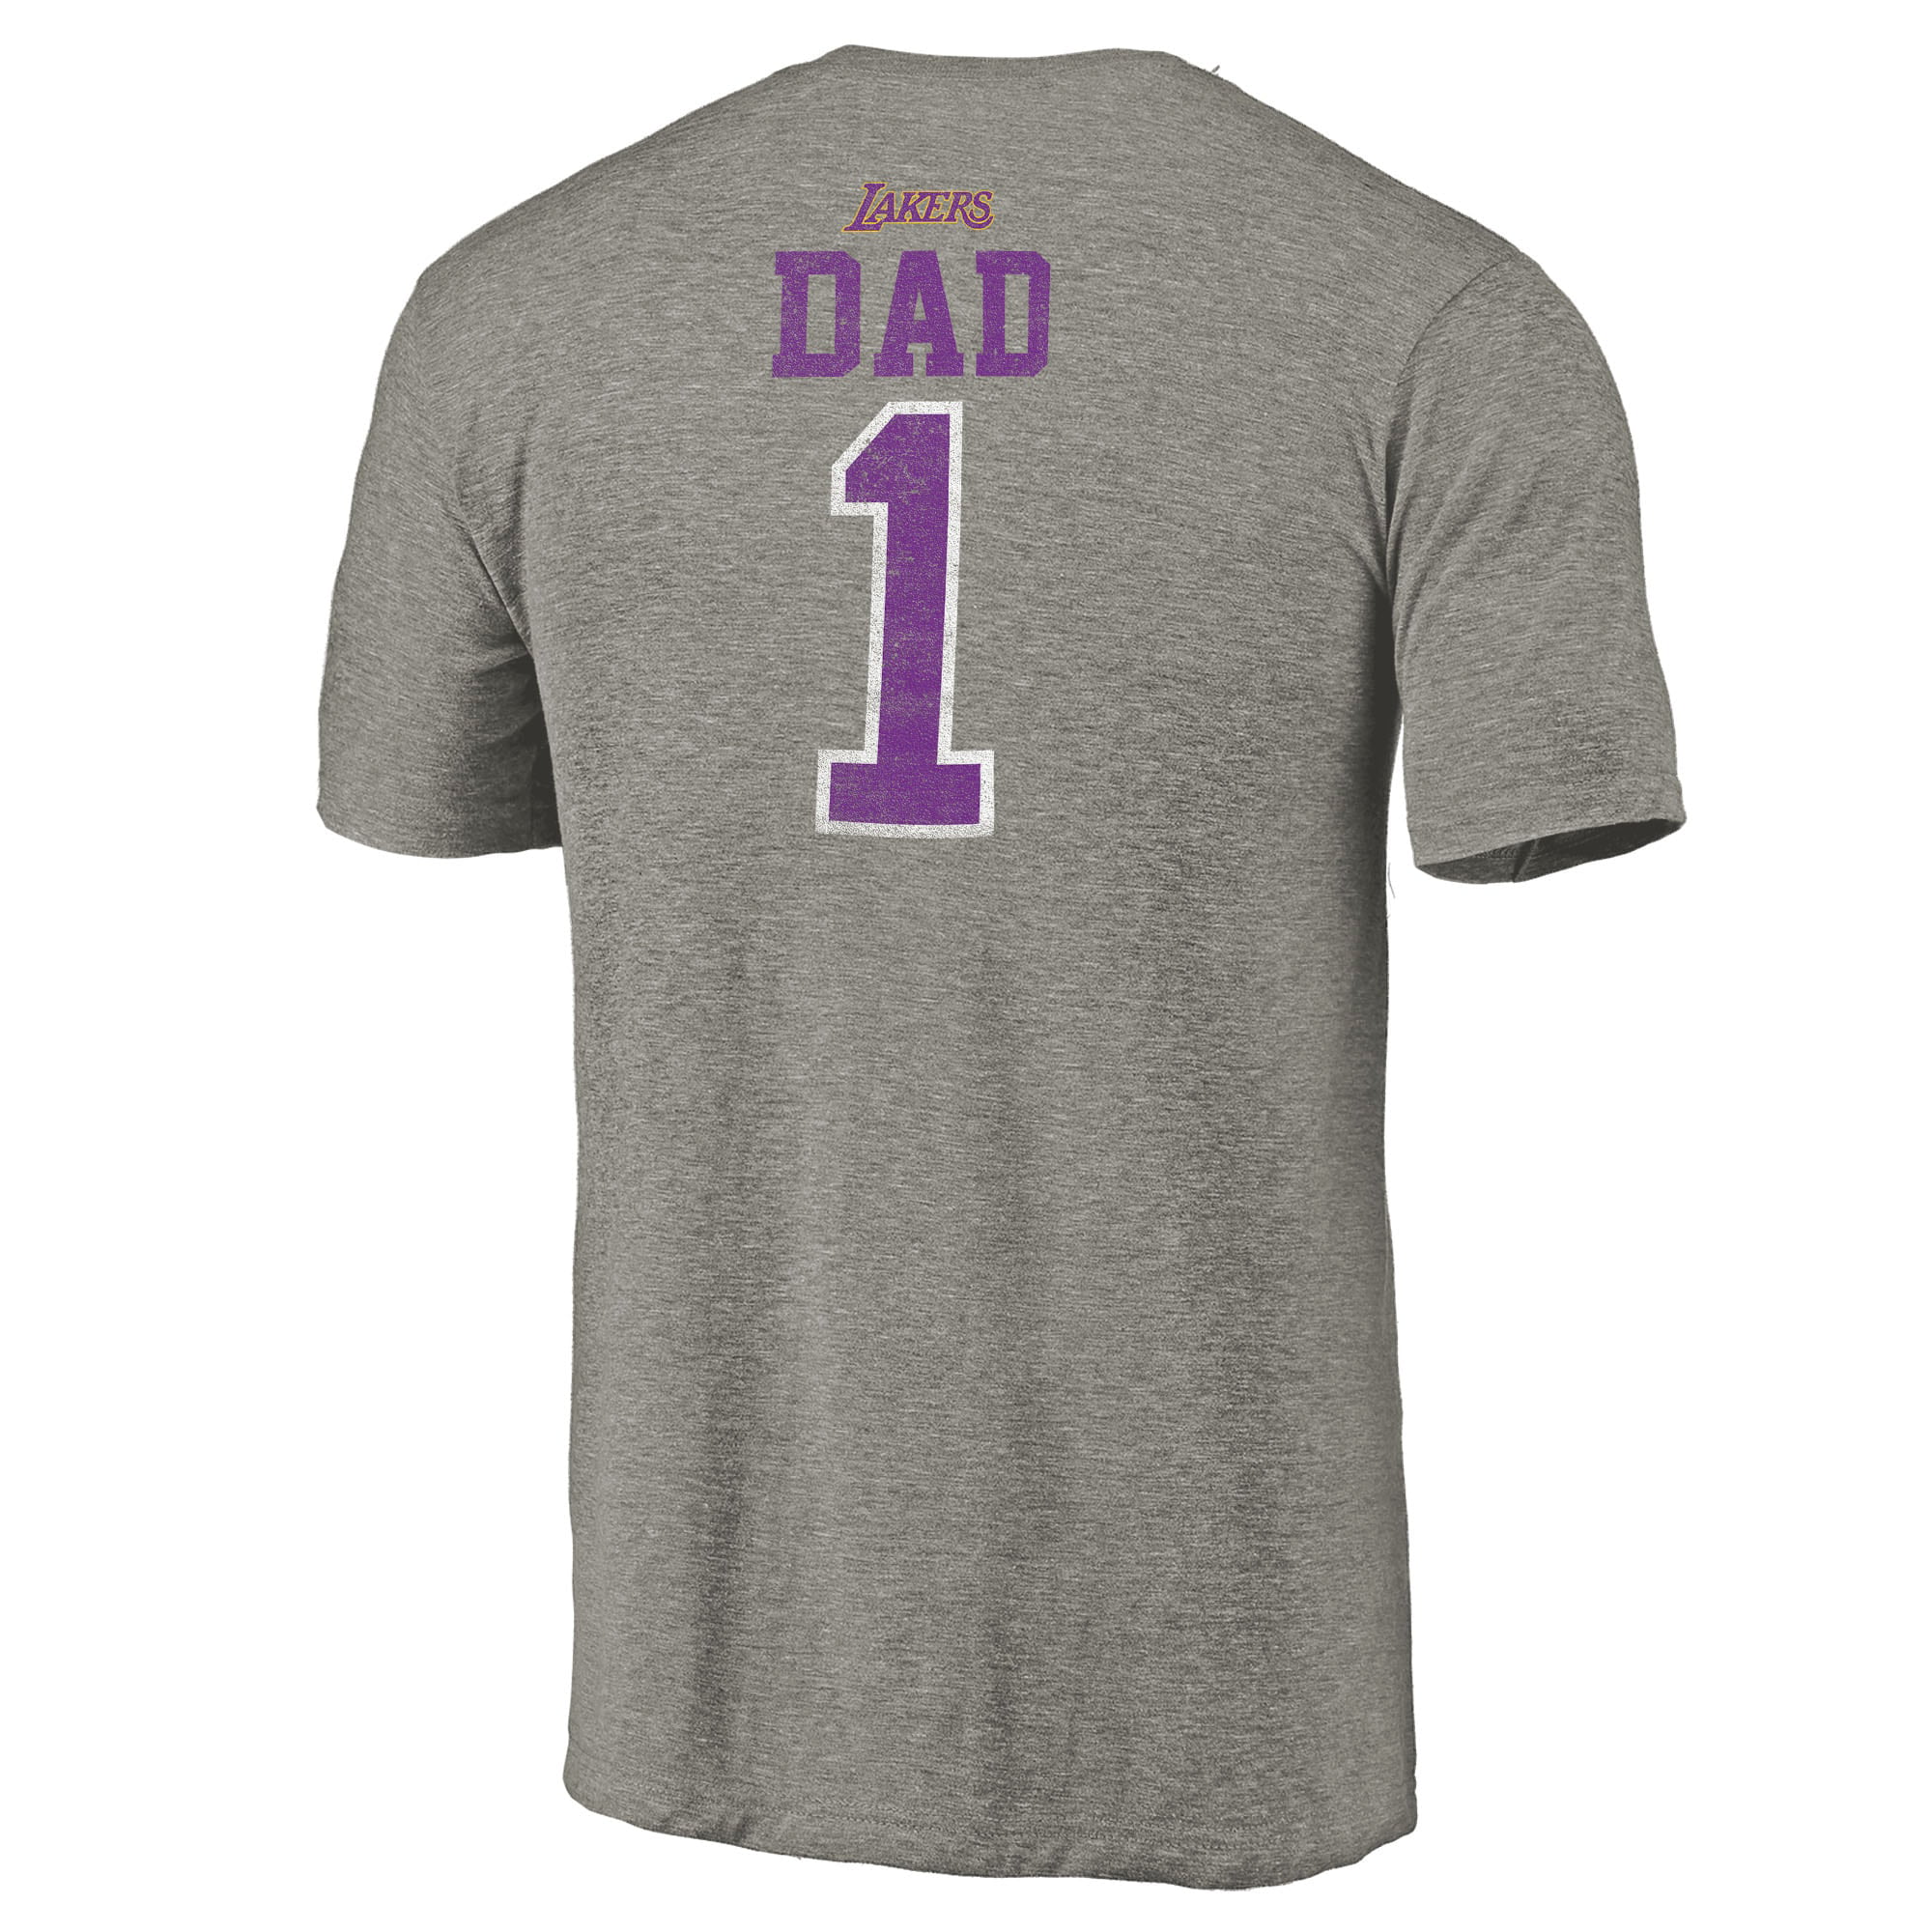 lakers dad shirt